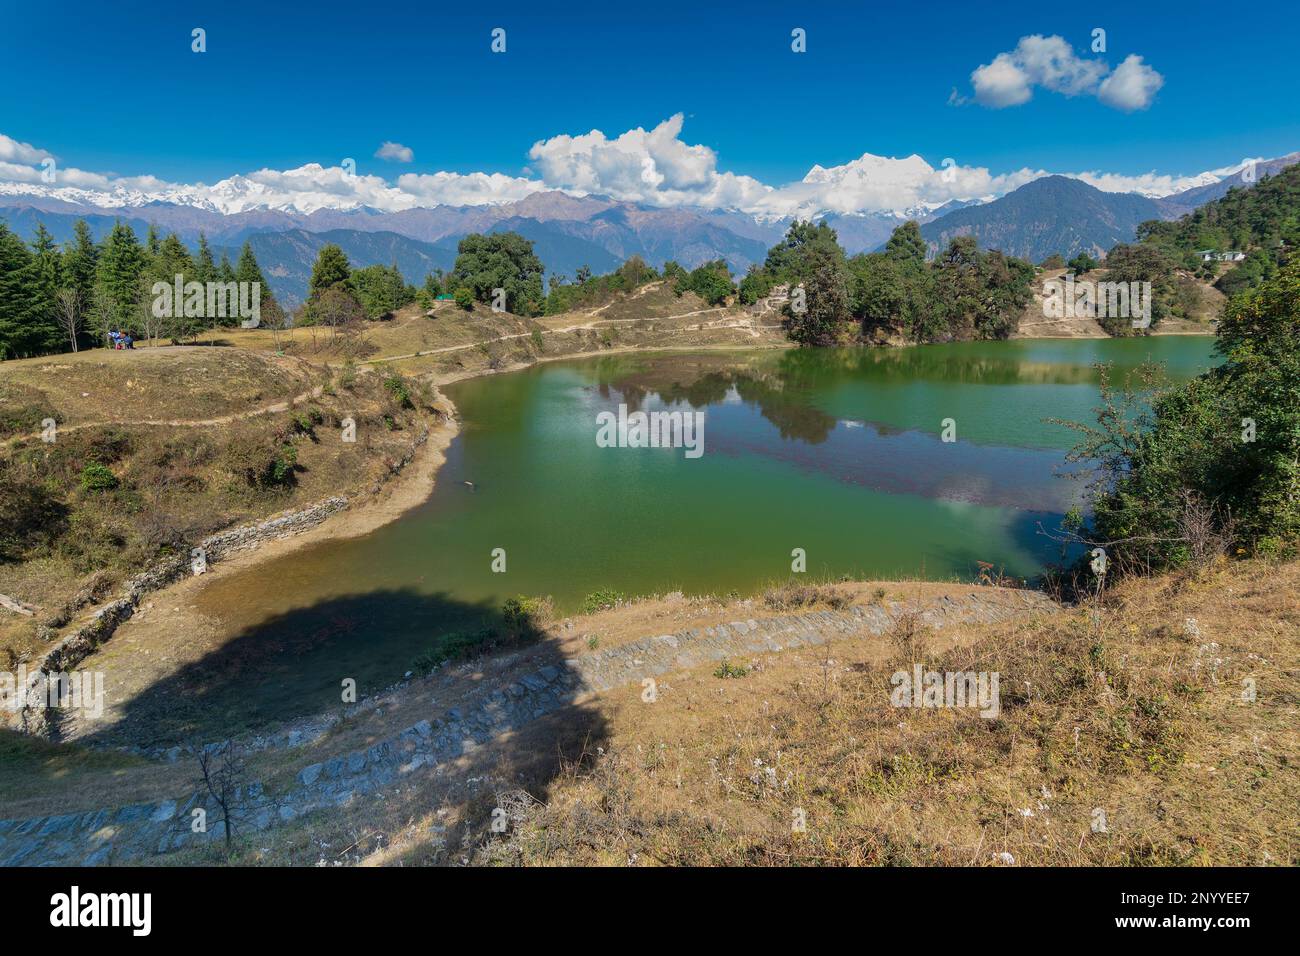 Deoriatal, Uttarakhand, Indien, Deoria Tal, Devaria oder Deoriya See im Dorf Sari , Garhwal Himalaya, berühmt für schneebedeckte Chaukhamba Berge. Stockfoto